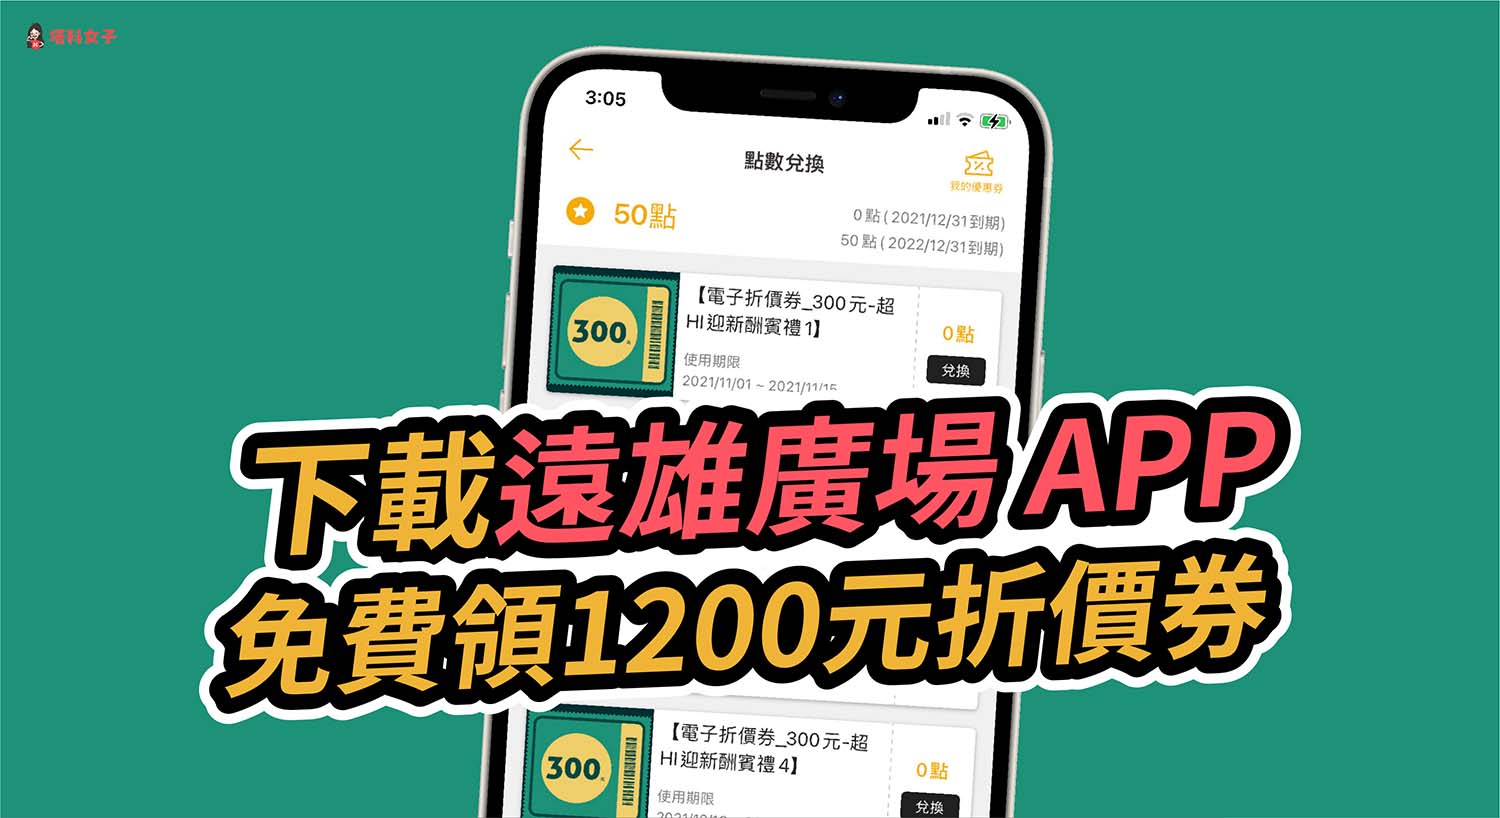 遠雄廣場 APP 改版服務升級，11 月底前更新下載直接領 1200 元！